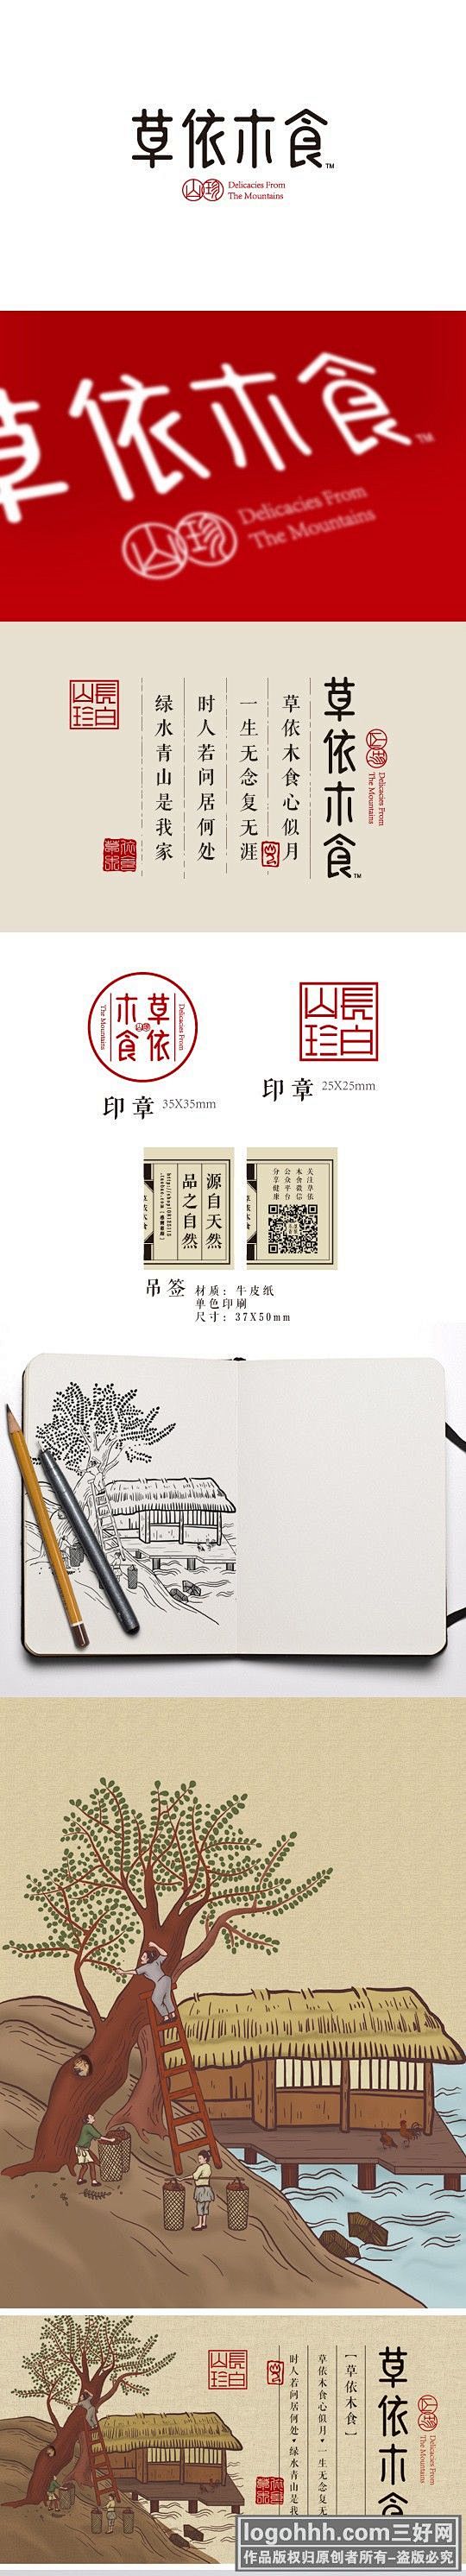 字体设计 中国风标志设计欣赏，中国风lo...